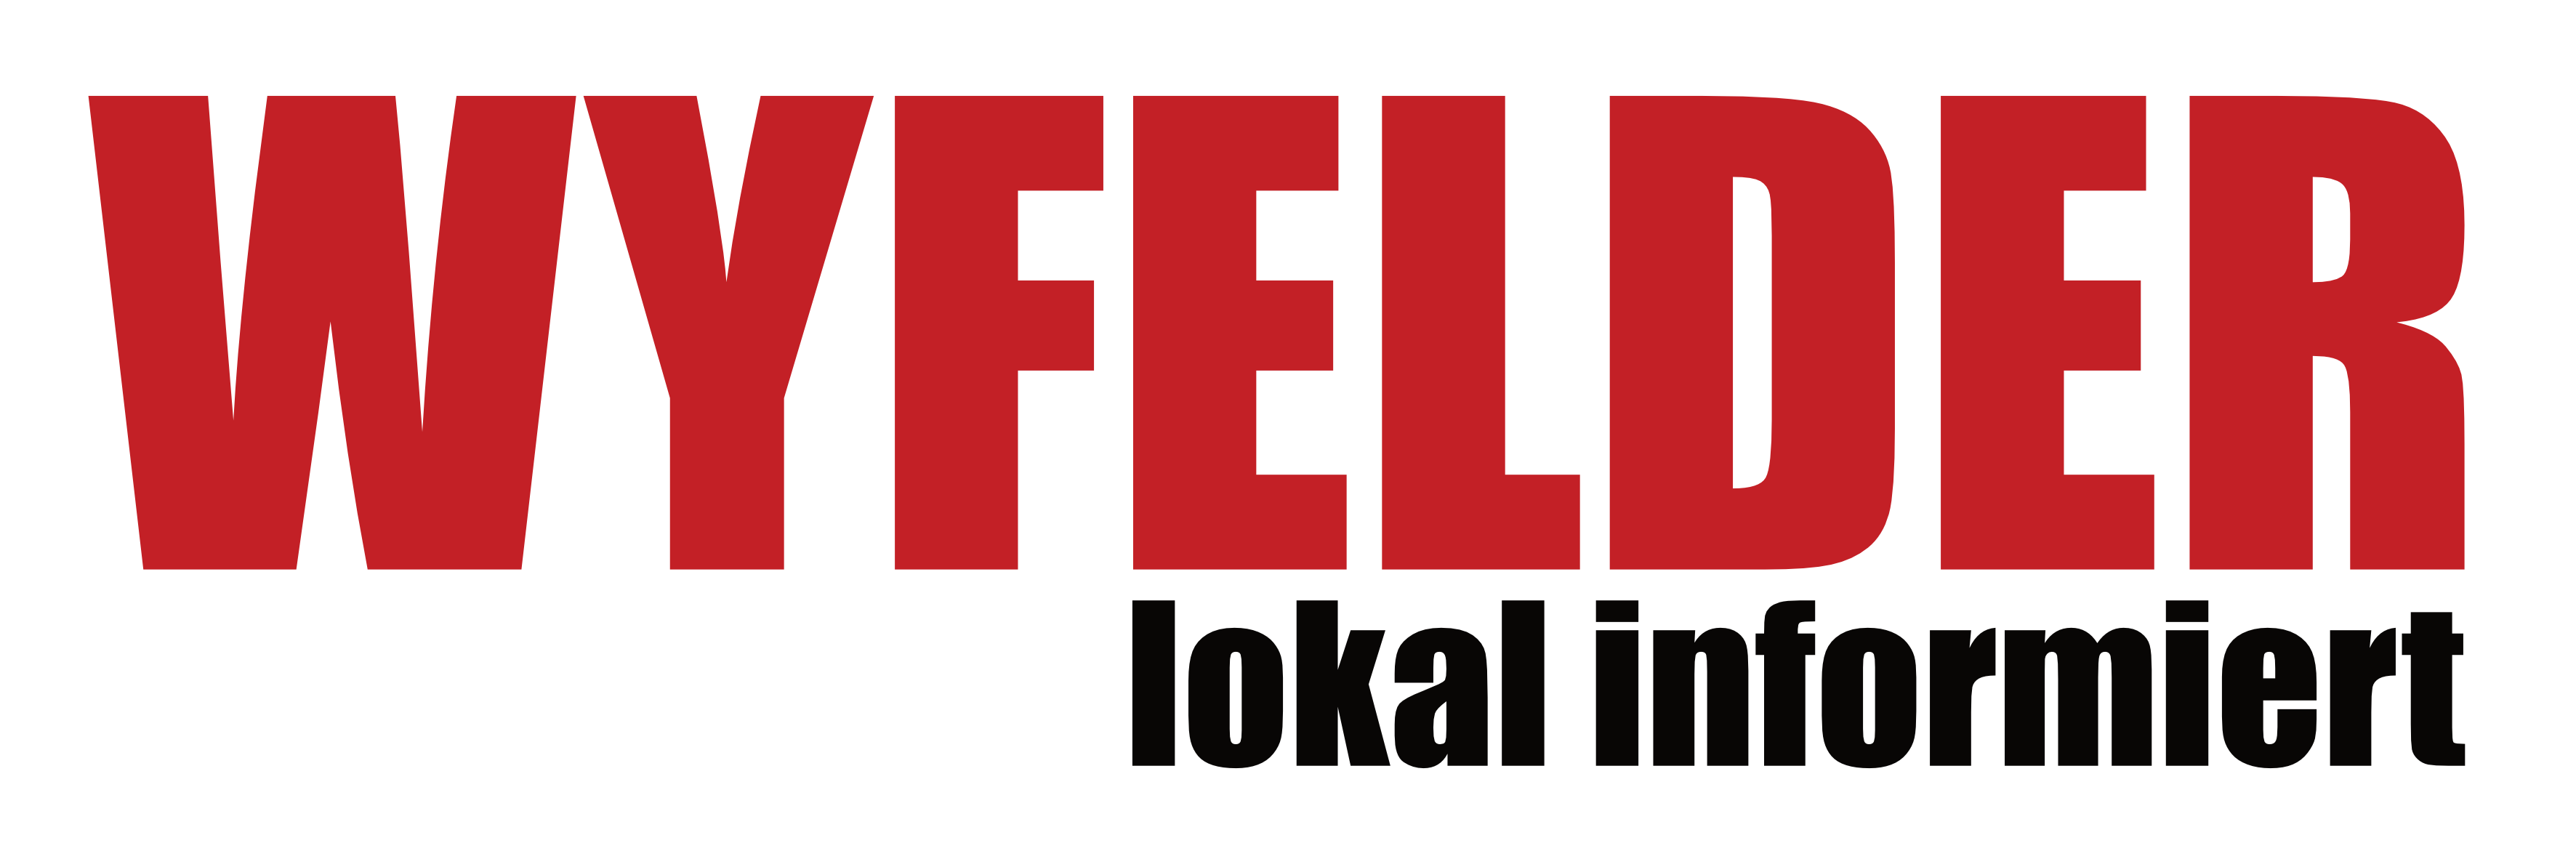 Logo WYFELDER – lokal informiert Kulturrausch Bürglen Weinfelden Kulturverein